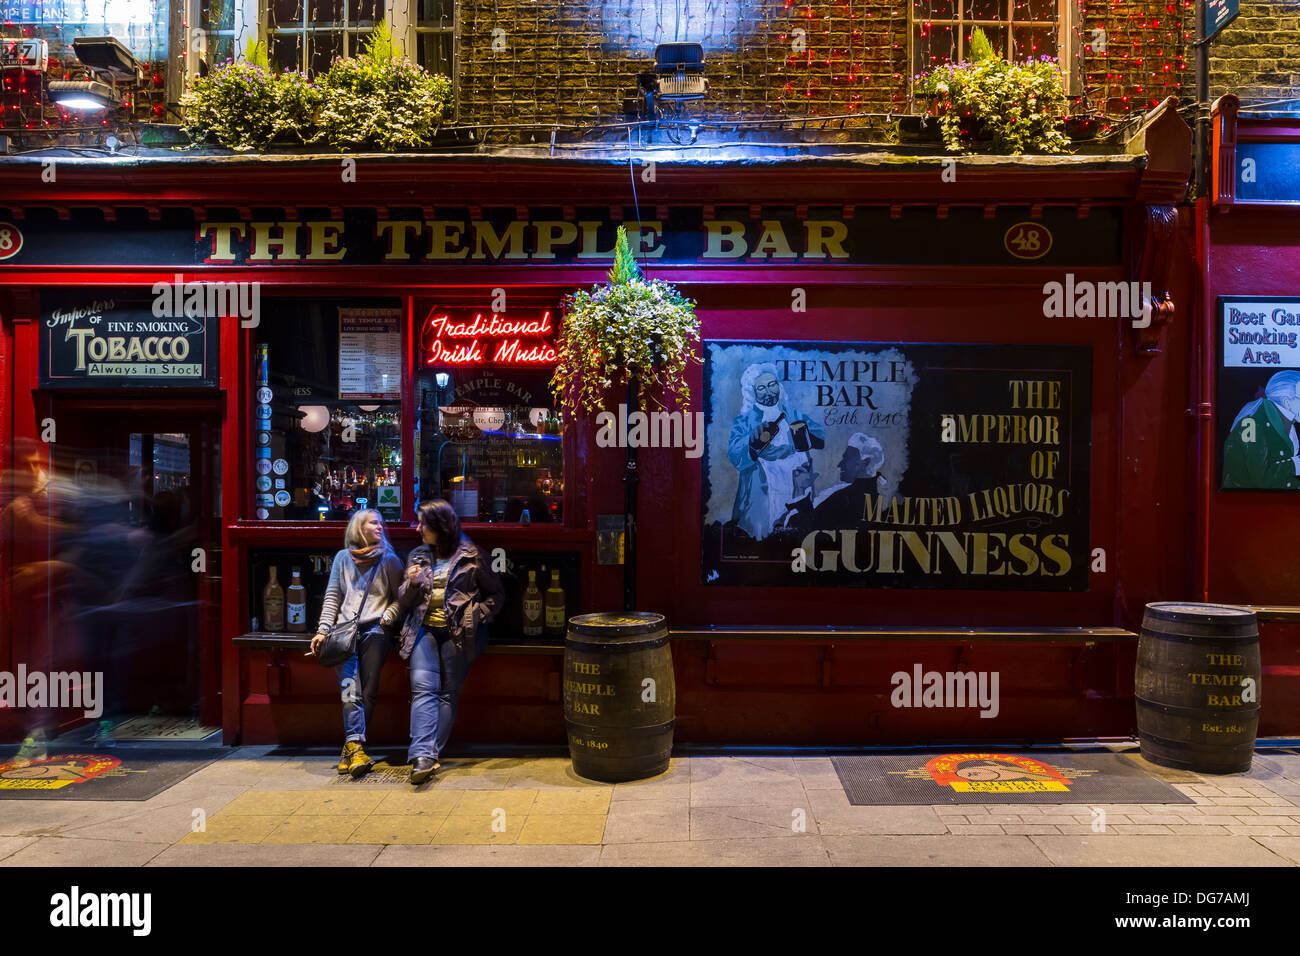 Dublín, Irlanda - 14 de octubre de 2013: un tradicional pub irlandés llamado El Temple Bar en la calle del mismo nombre del templo B Foto de stock